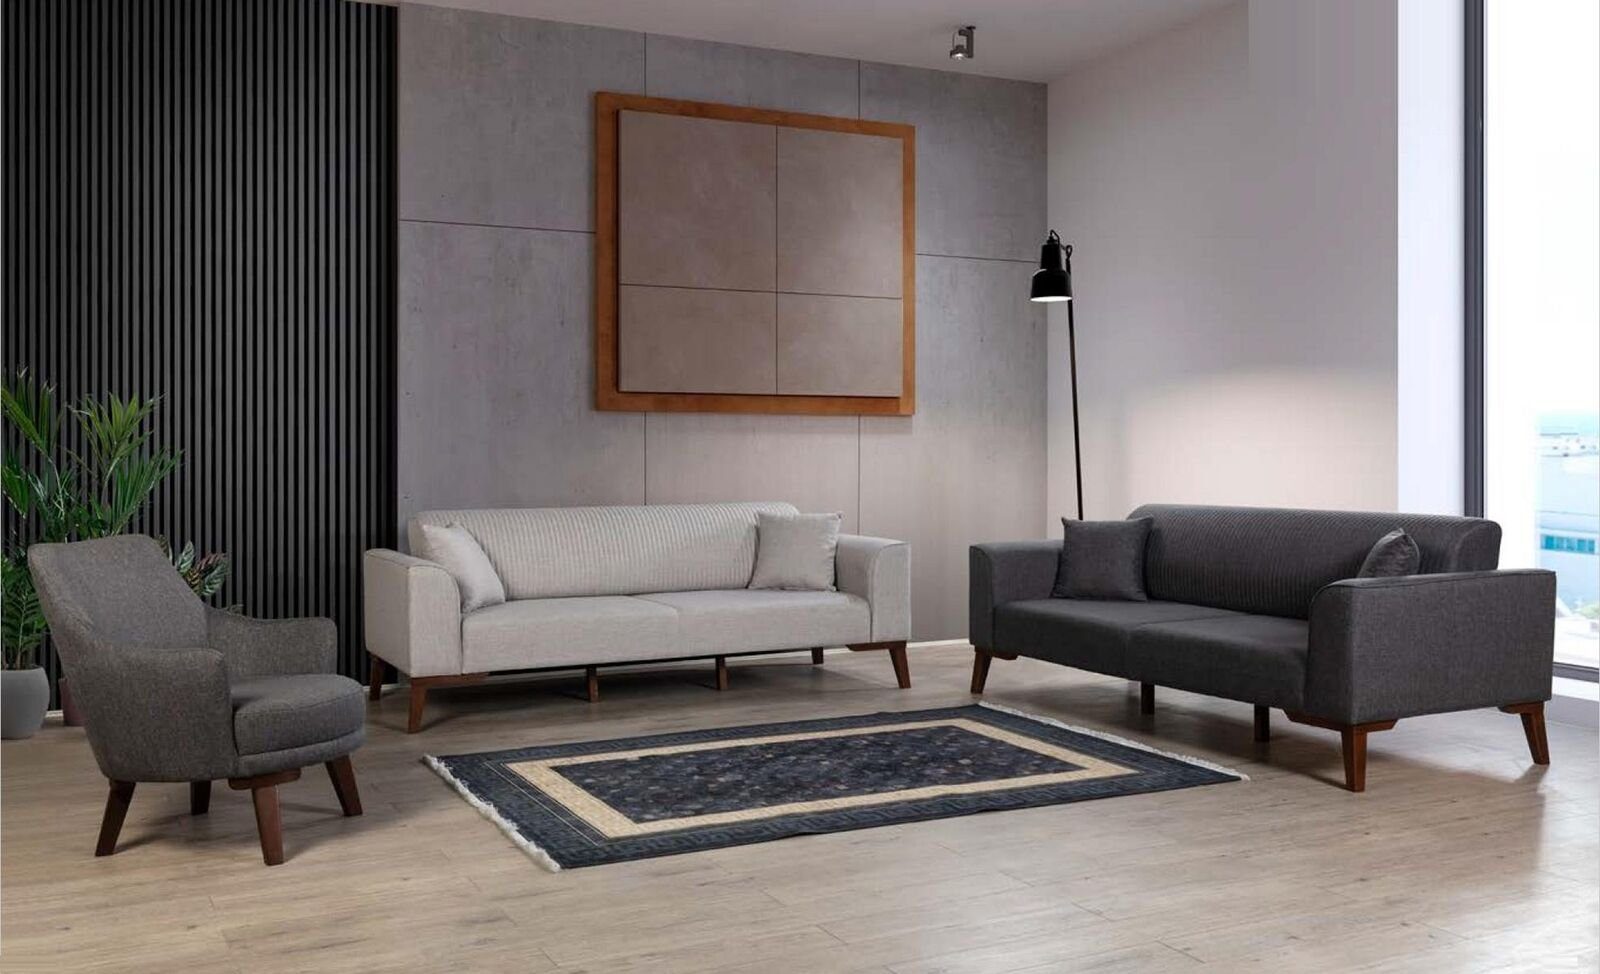 JVmoebel Sofa Möbel 3 Grau Neu, in Europe Couchen Luxus Sitzer Sofas Sofa Made Design Dreisitzer